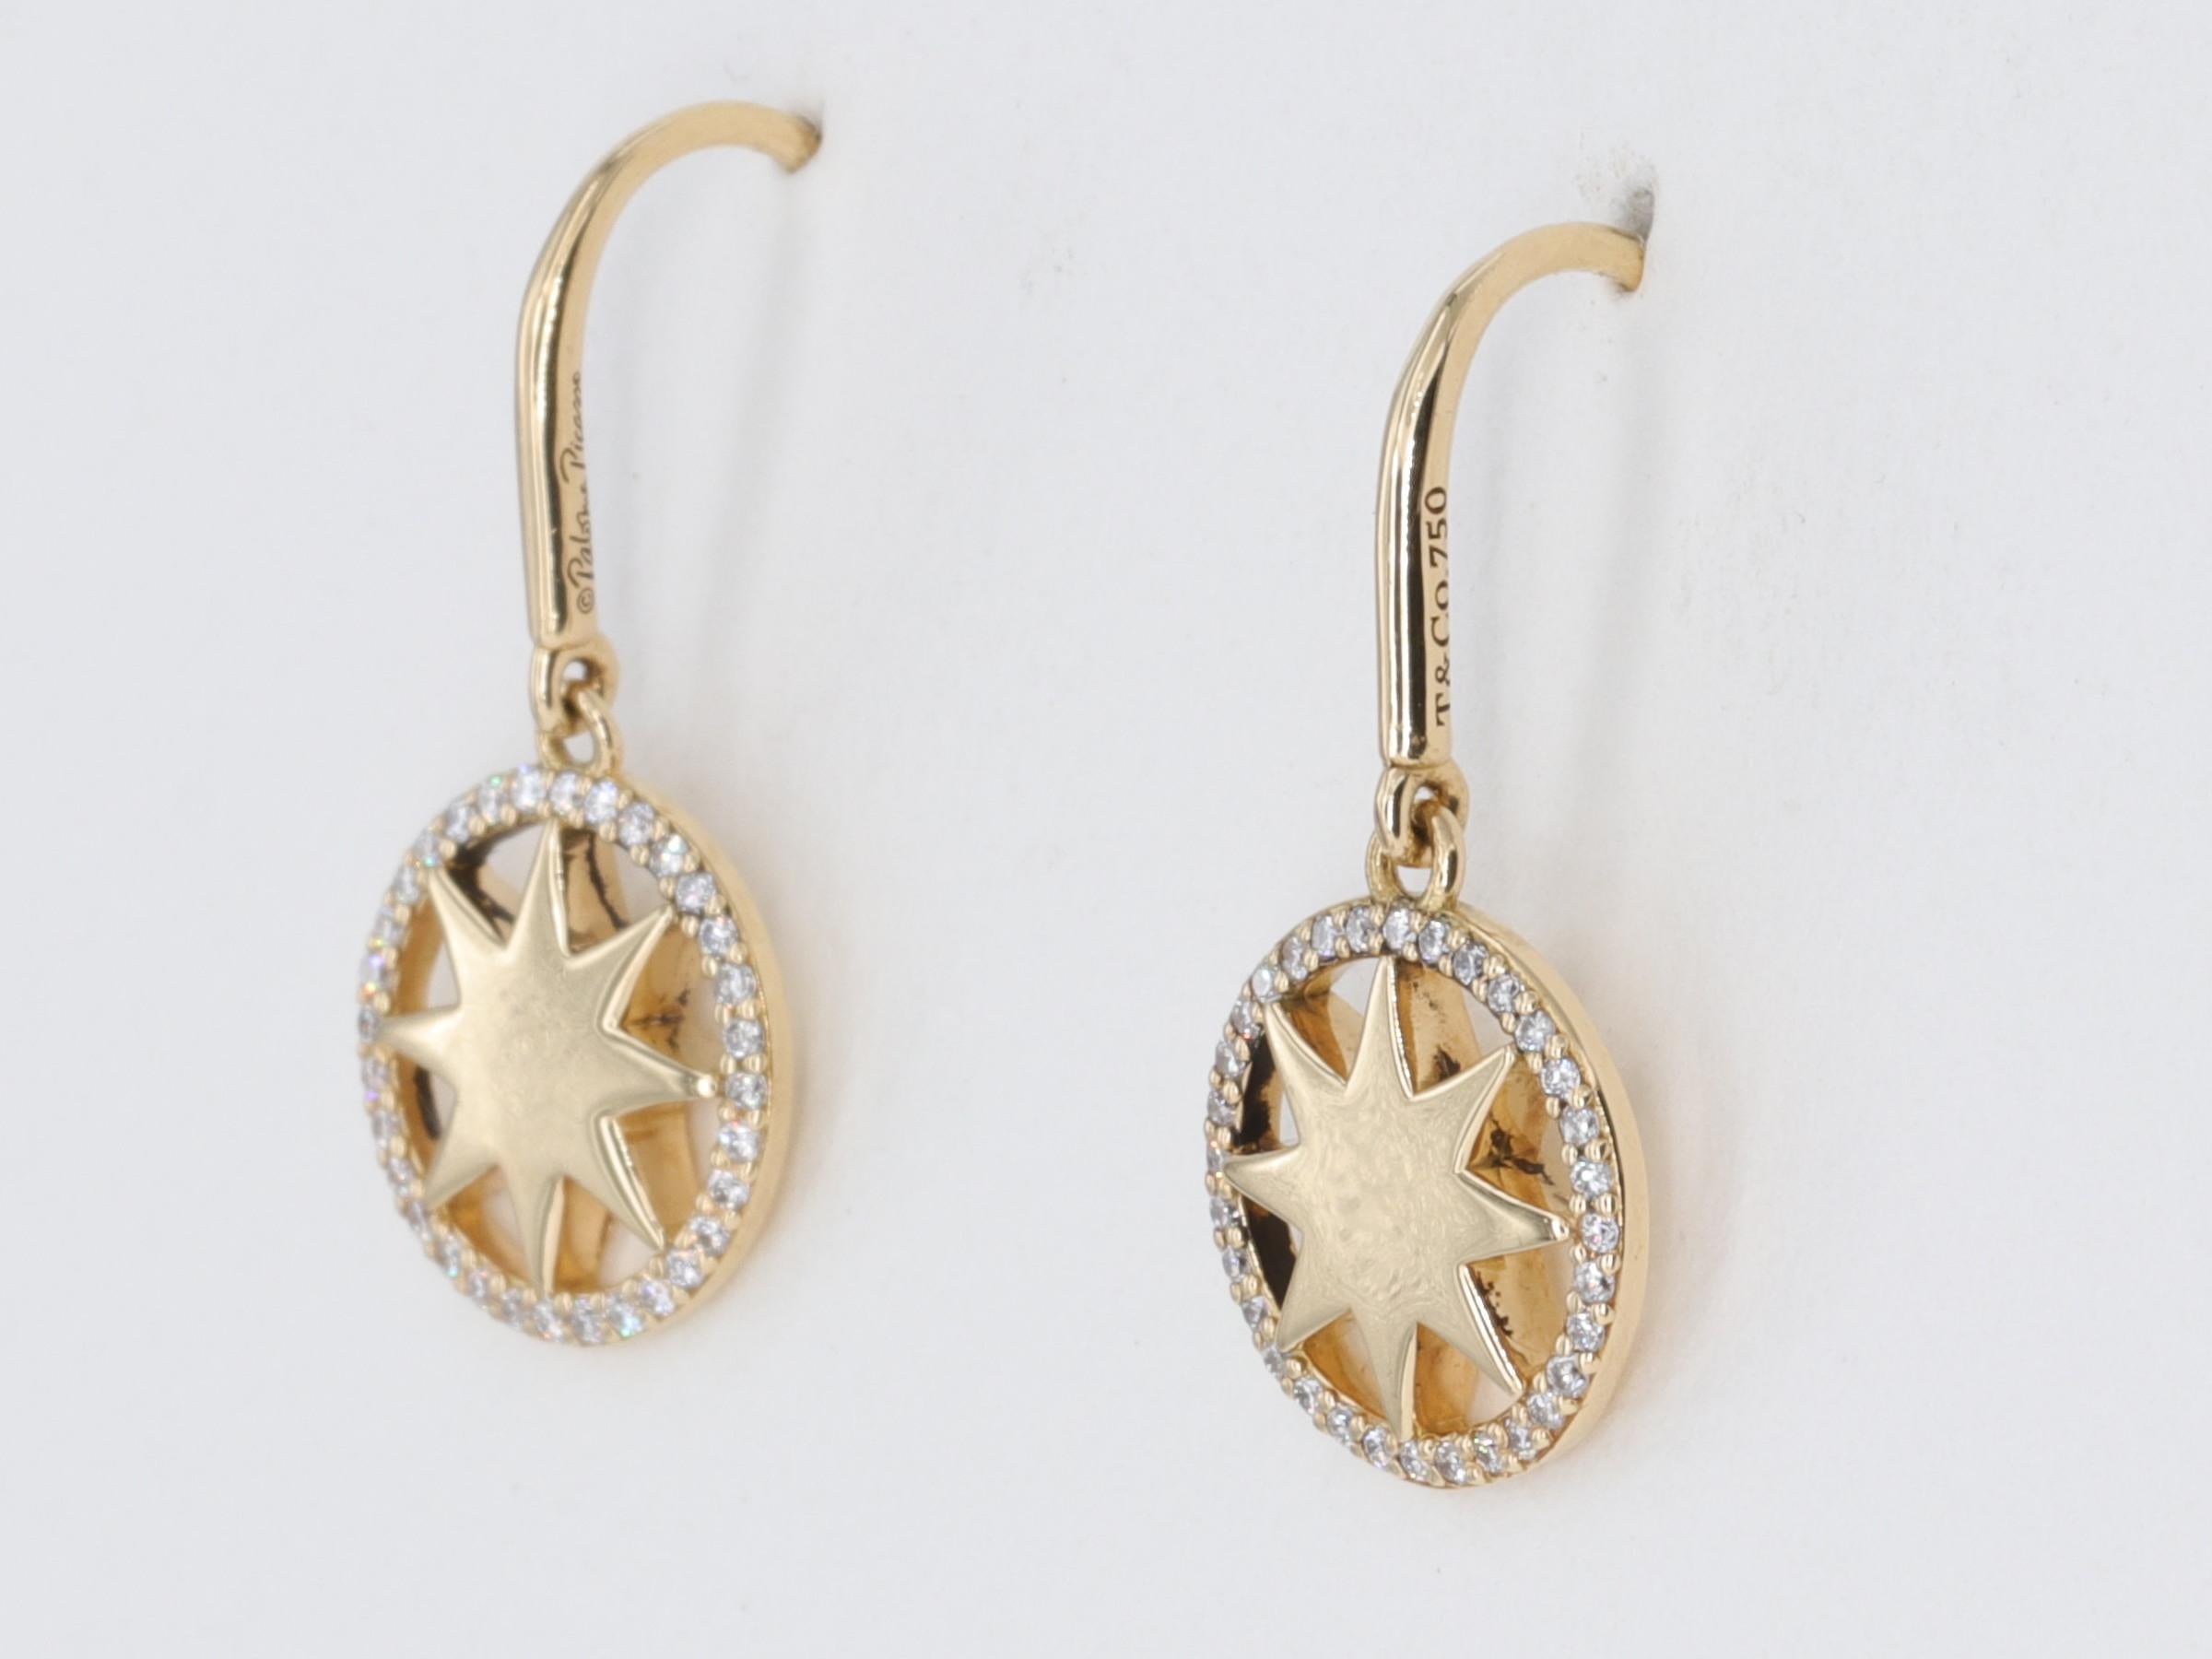 Tiffany & Co - Boucles d'oreilles pendantes en étoile Paloma Picasso - Diamants et or jaune

Les boucles d'oreilles contiennent environ 0,20 carats de diamants ronds de taille brillant de couleur E/F et de pureté VVS-VS. 

Les boucles d'oreilles